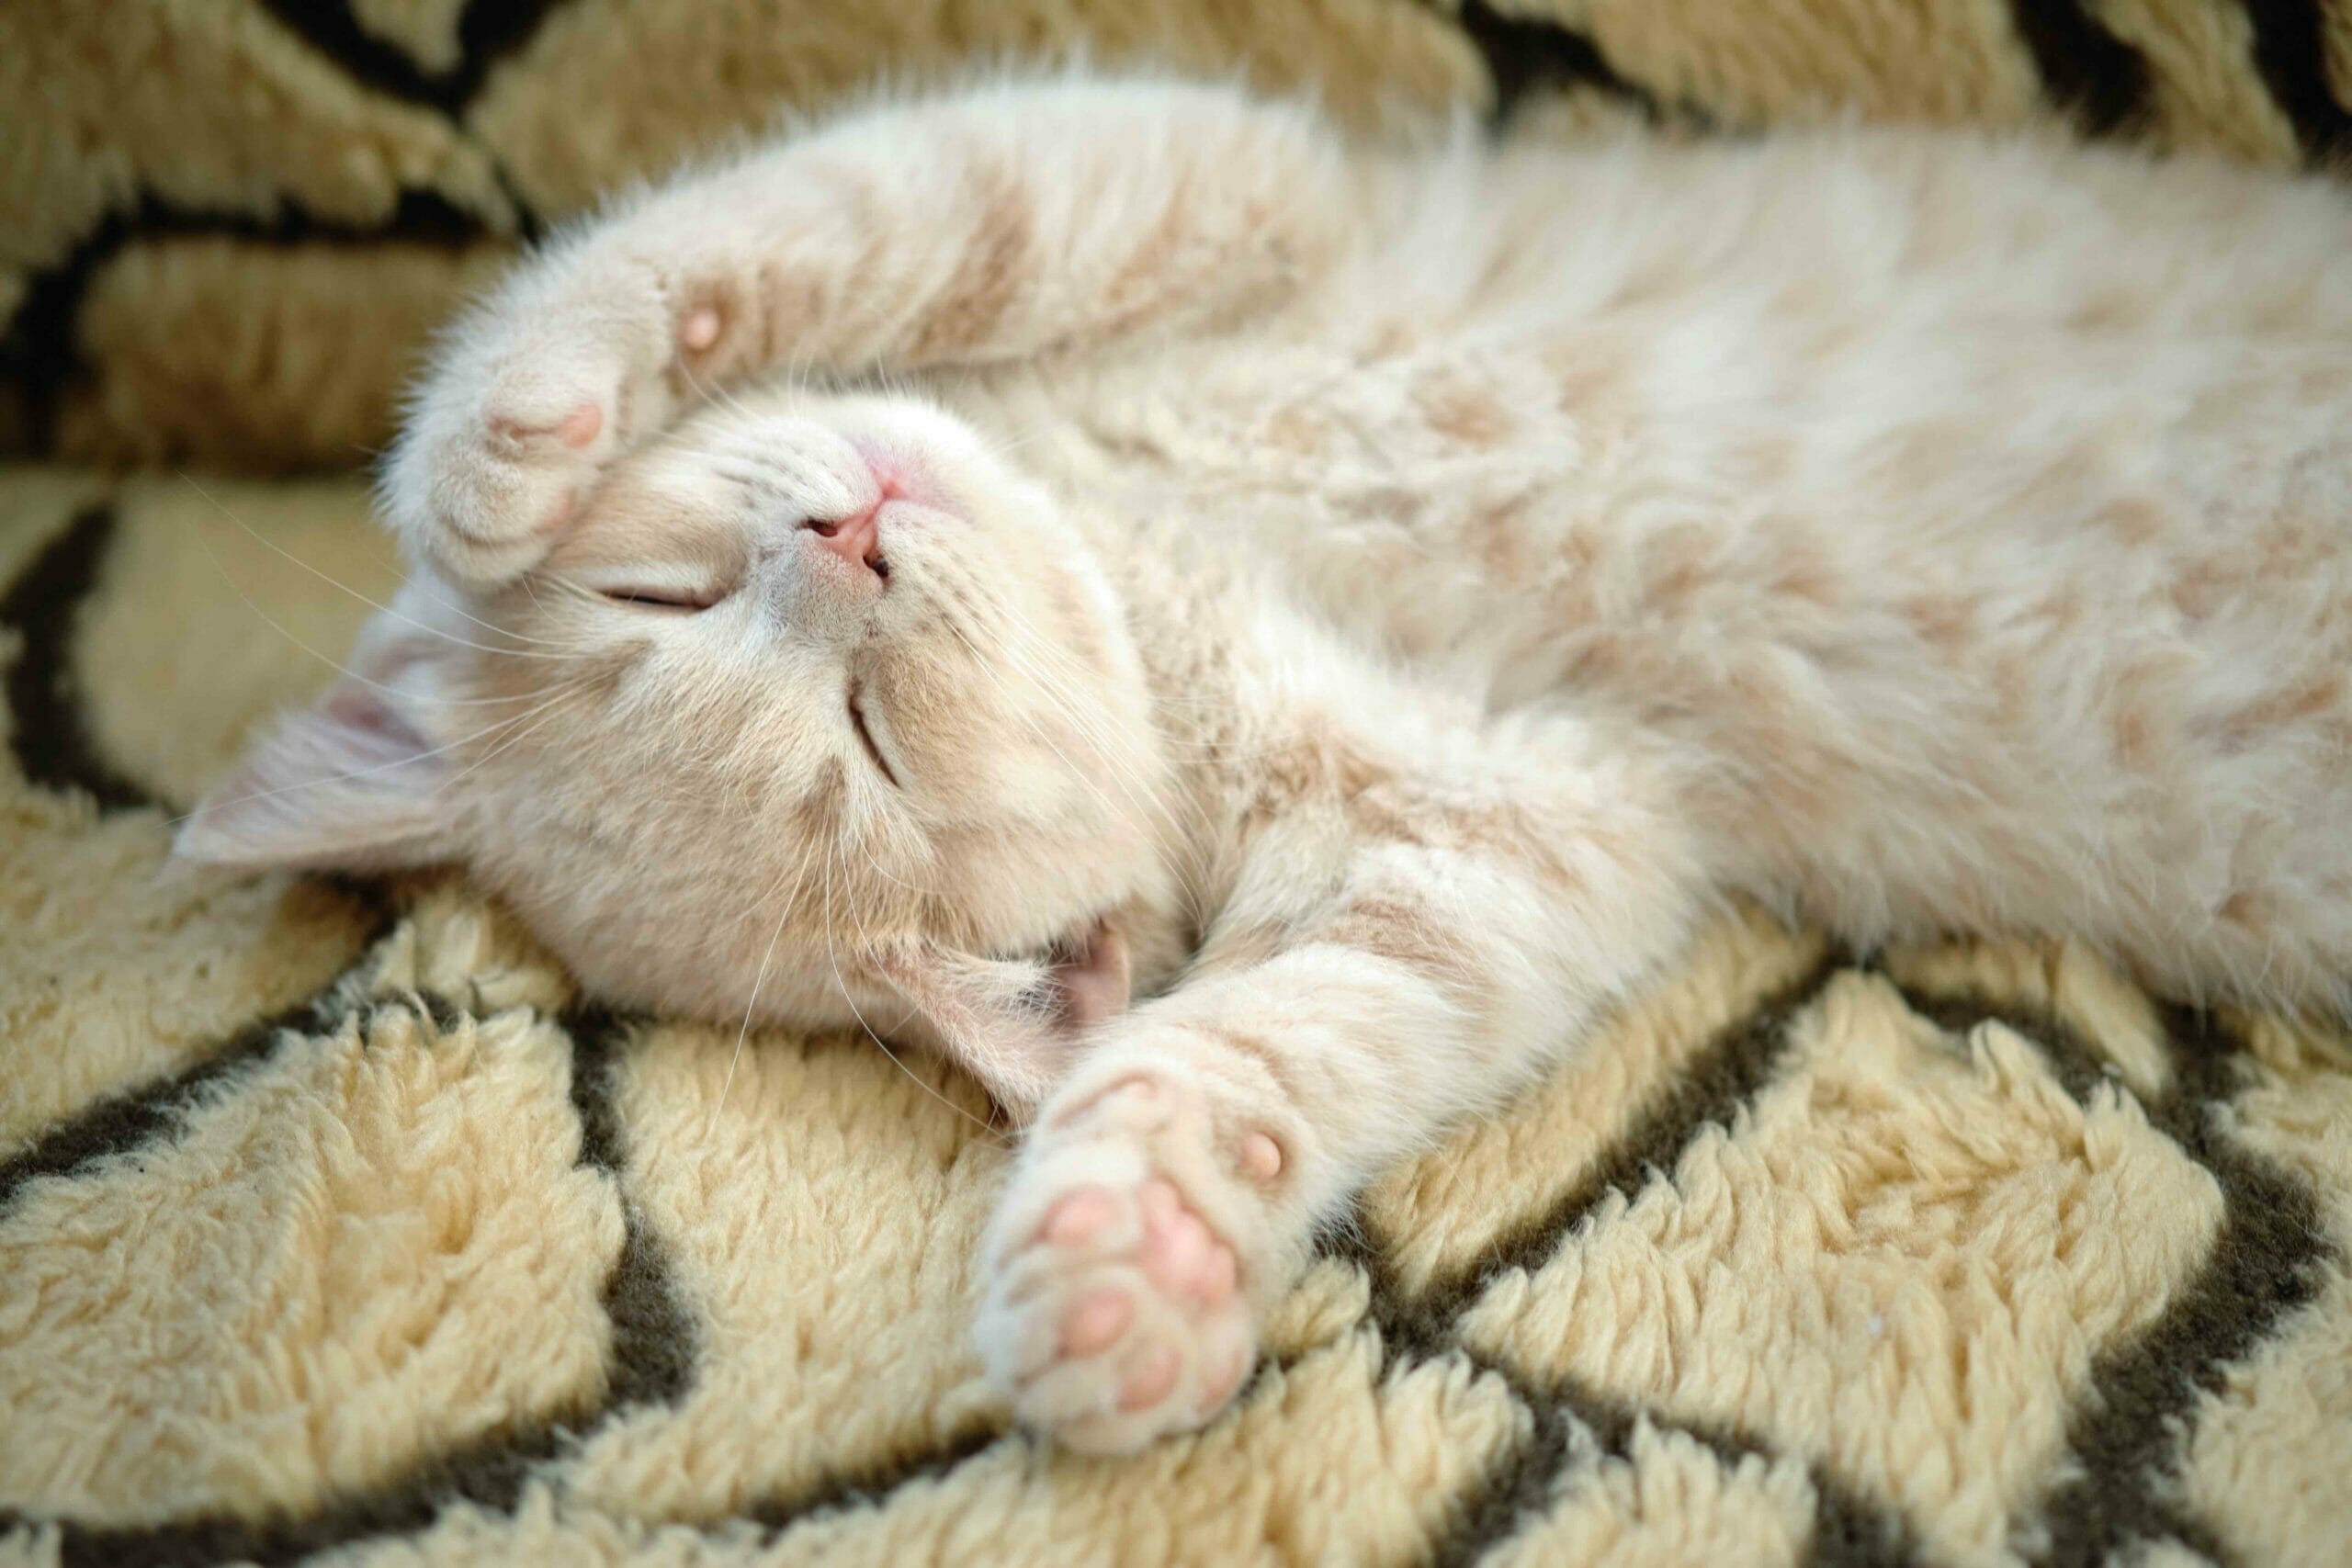 Roztomilé spící kotě ukazuje nadýchané bříško a tlapky